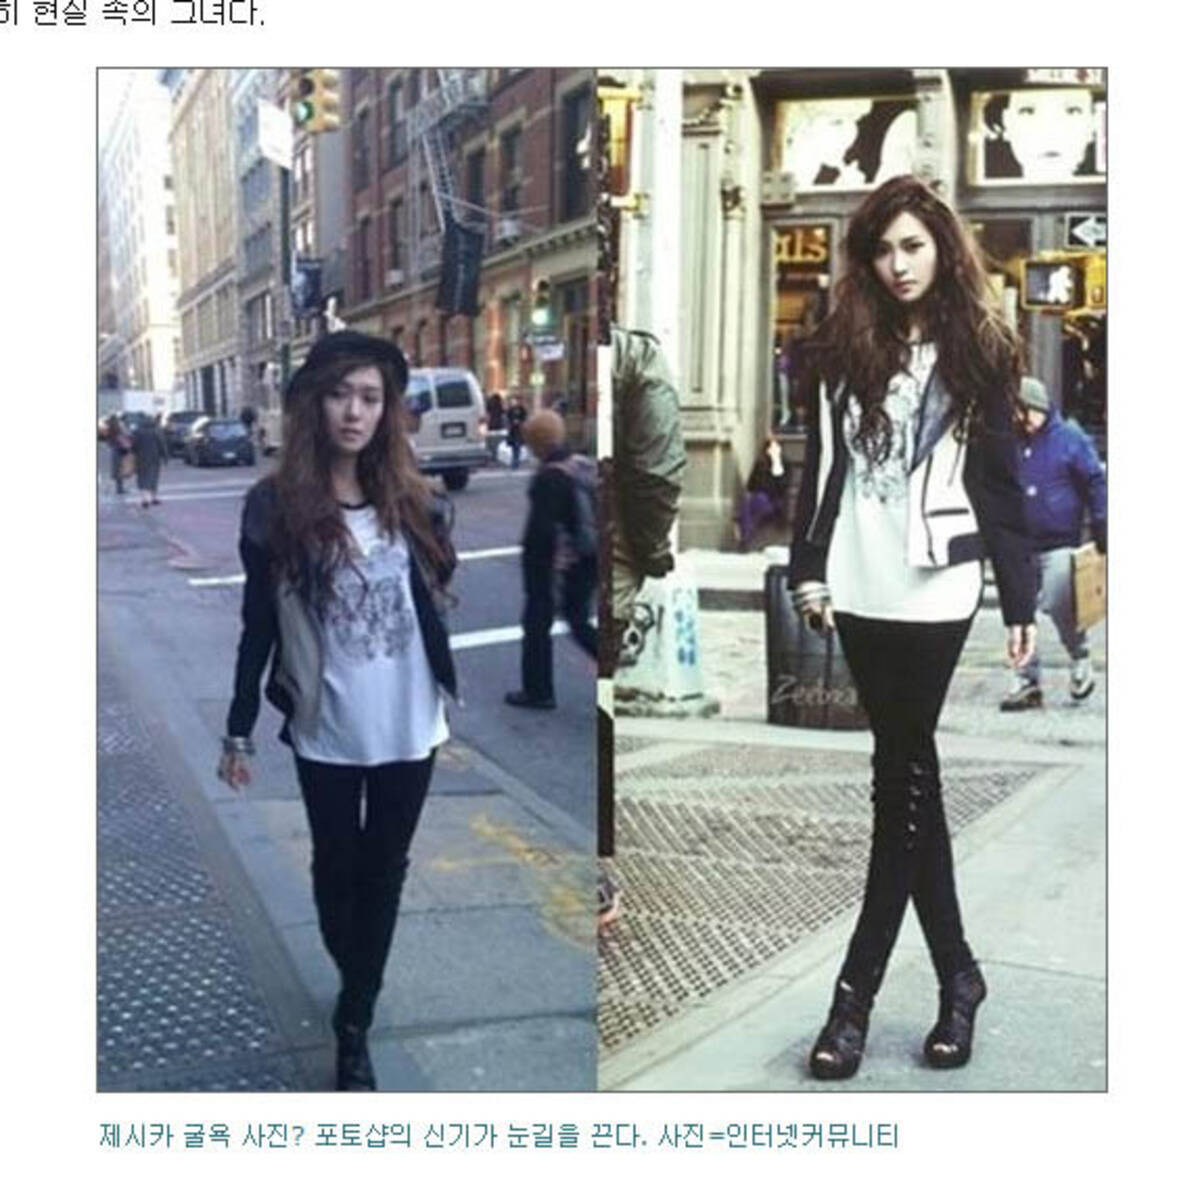 バランスおかしい 少女時代ジェシカの画像が話題に 韓国ネットユーザー 逆に親しみがわく 12年2月27日 エキサイトニュース